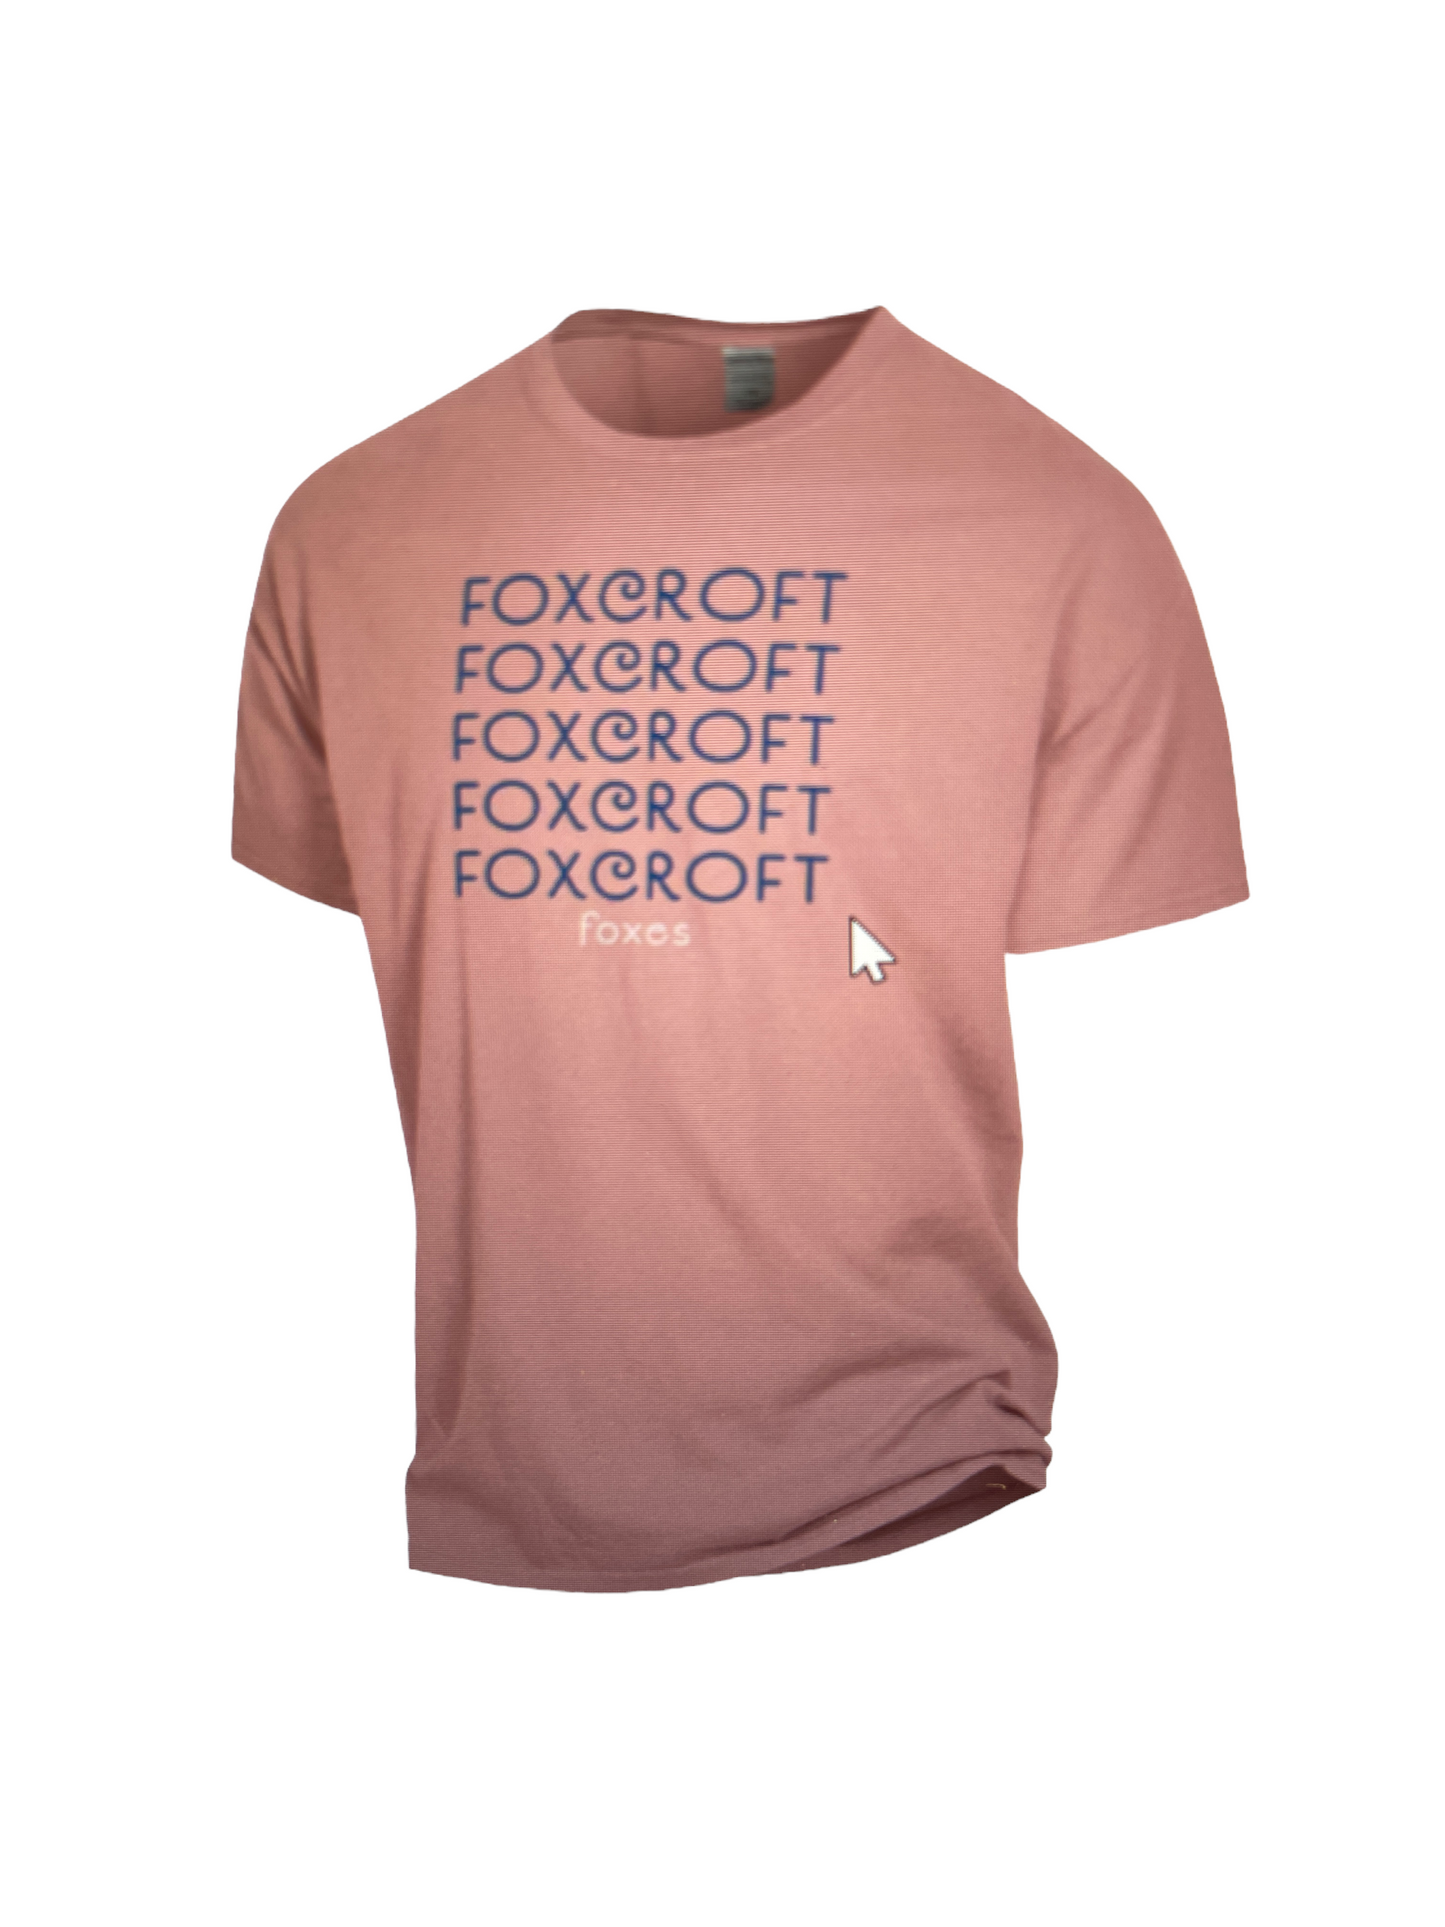 Fox and Hound t-shirts